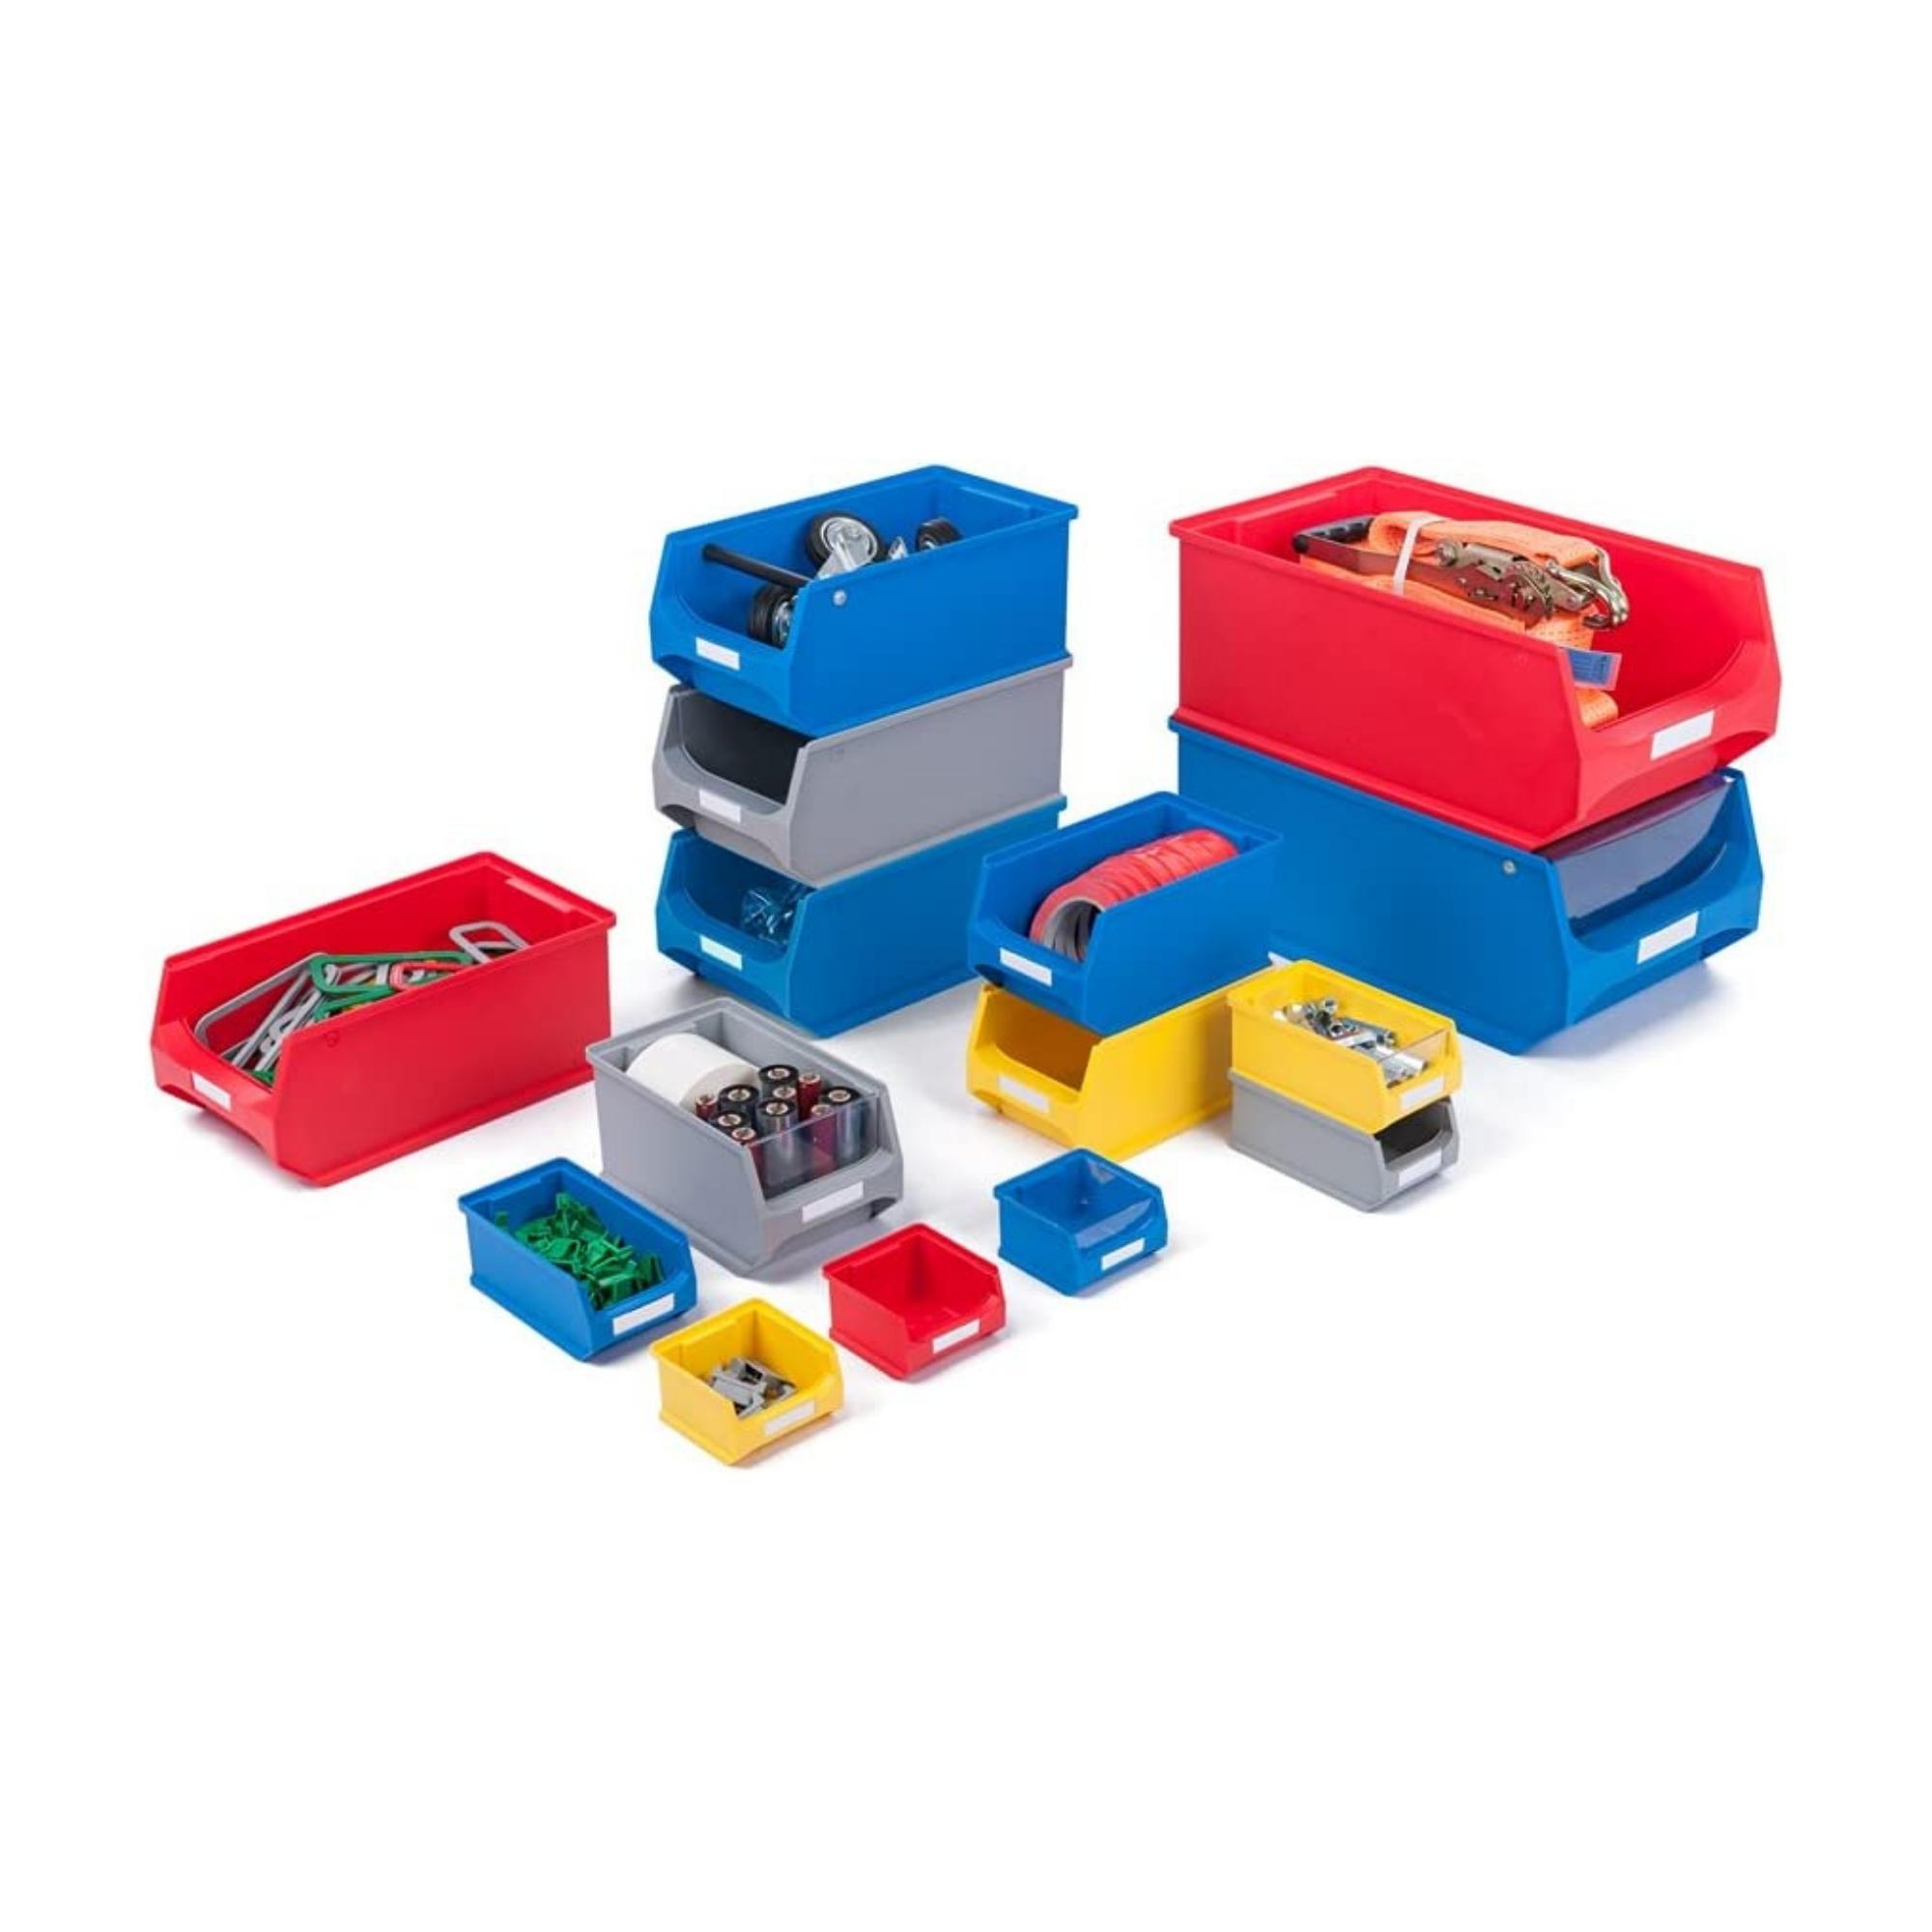 Wandleiste mit 6x Rote Sichtlagerbox 1.0 mit Abdeckung | HxBxT 6,1x60,5x10cm | Wandhalterung, Kleinteileaufbewahrung, Sortimentsboxhalterung